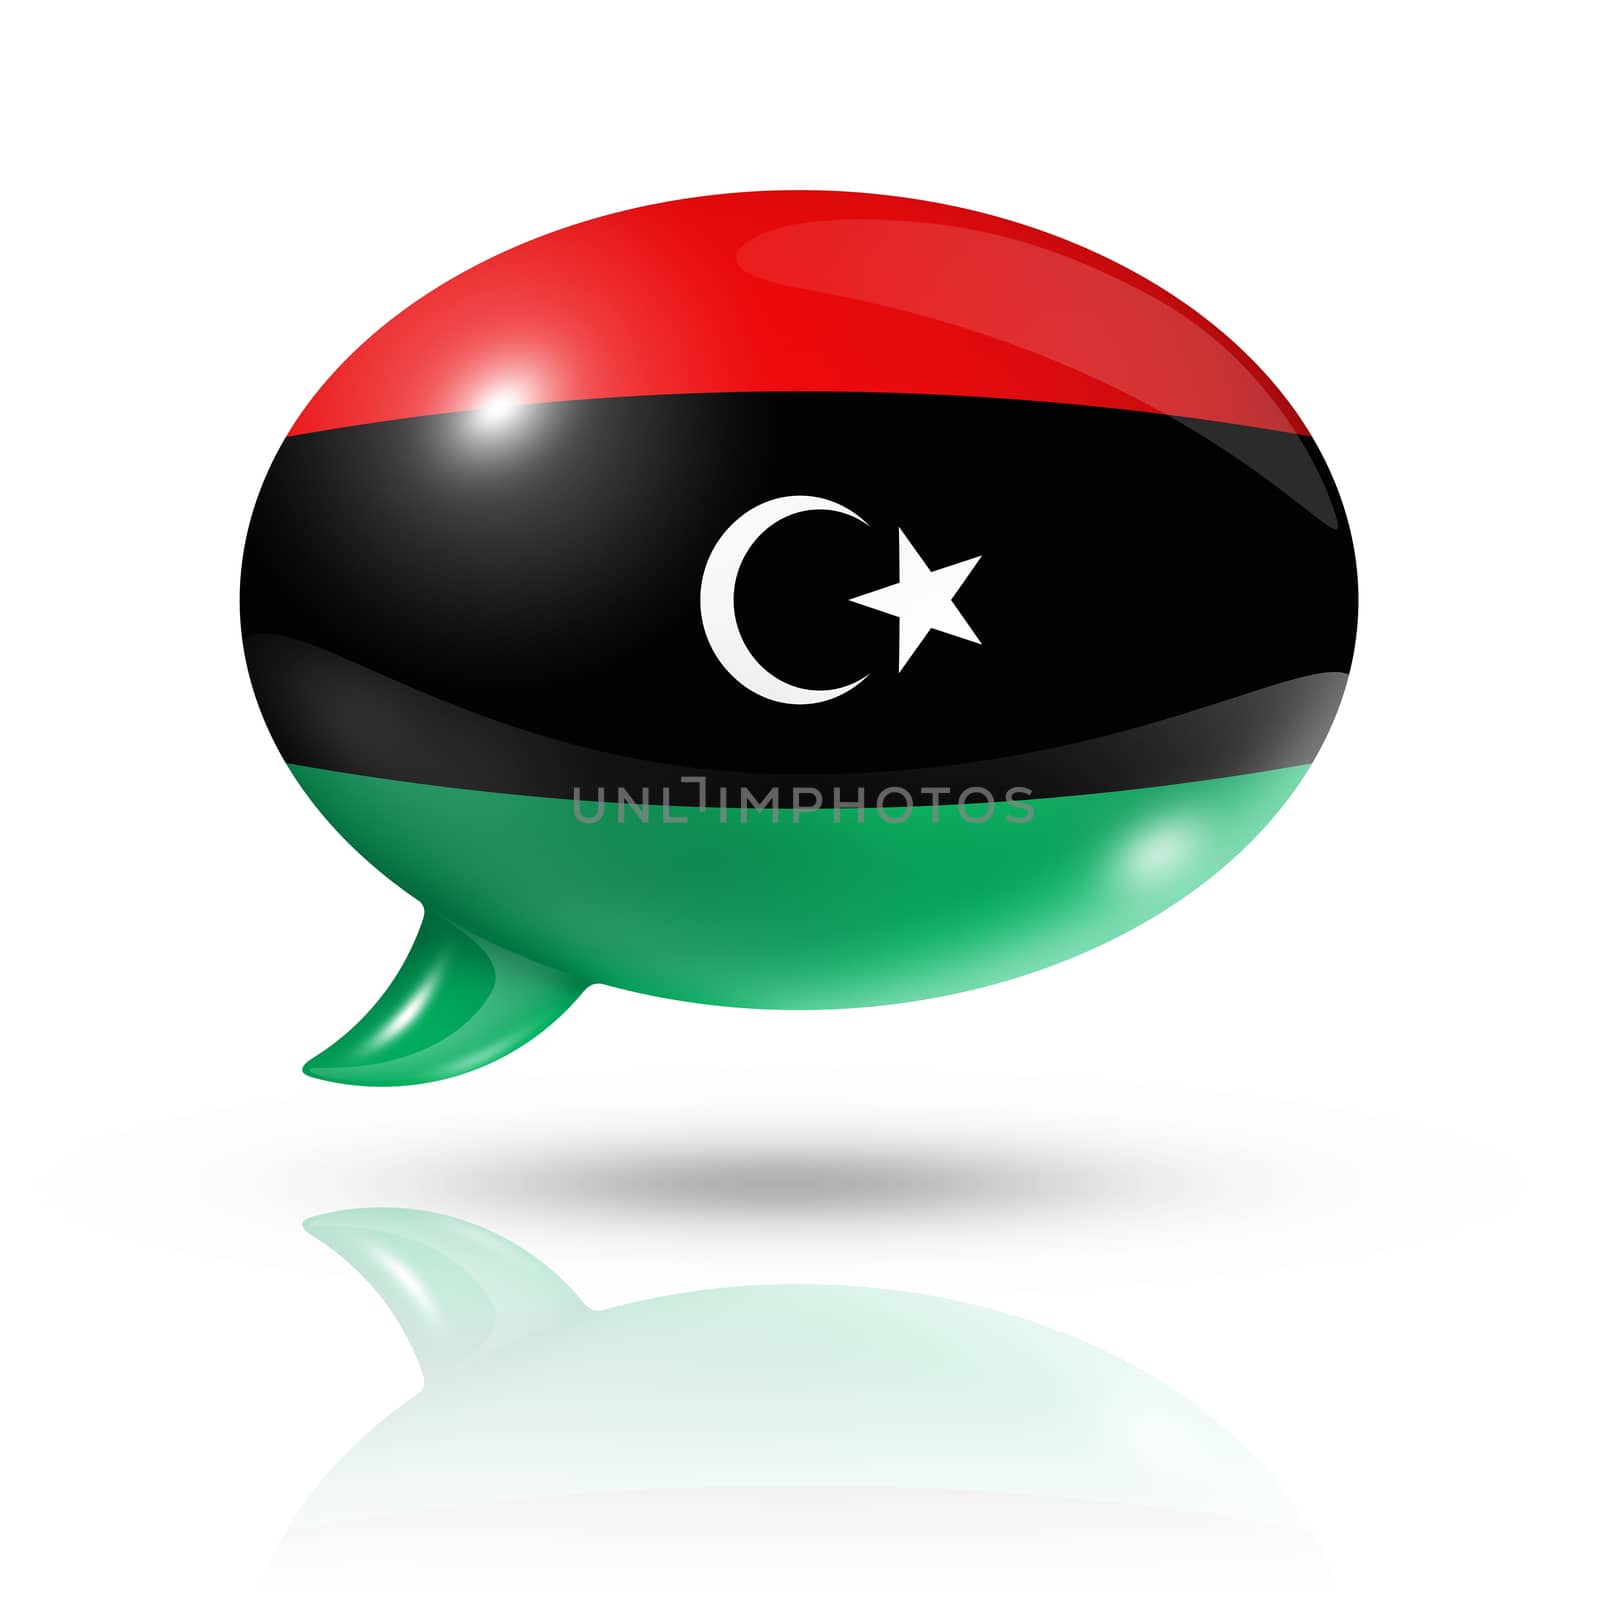 Libyan flag speech bubble by daboost